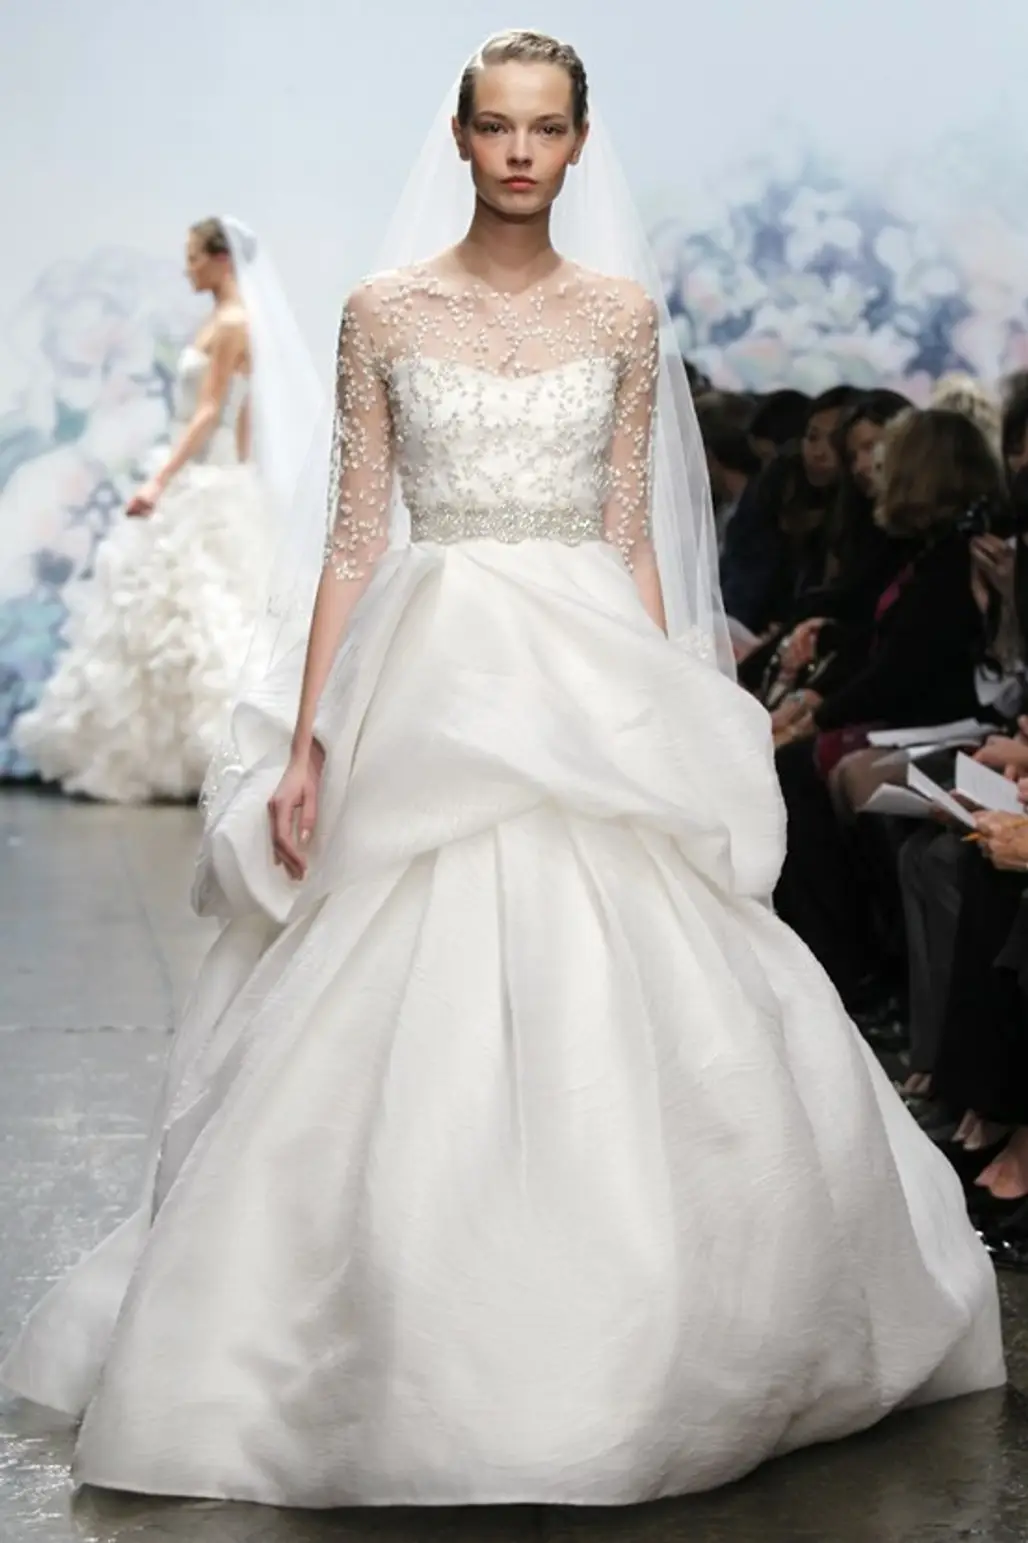 Illusion Neckline Wedding Gown Trend...